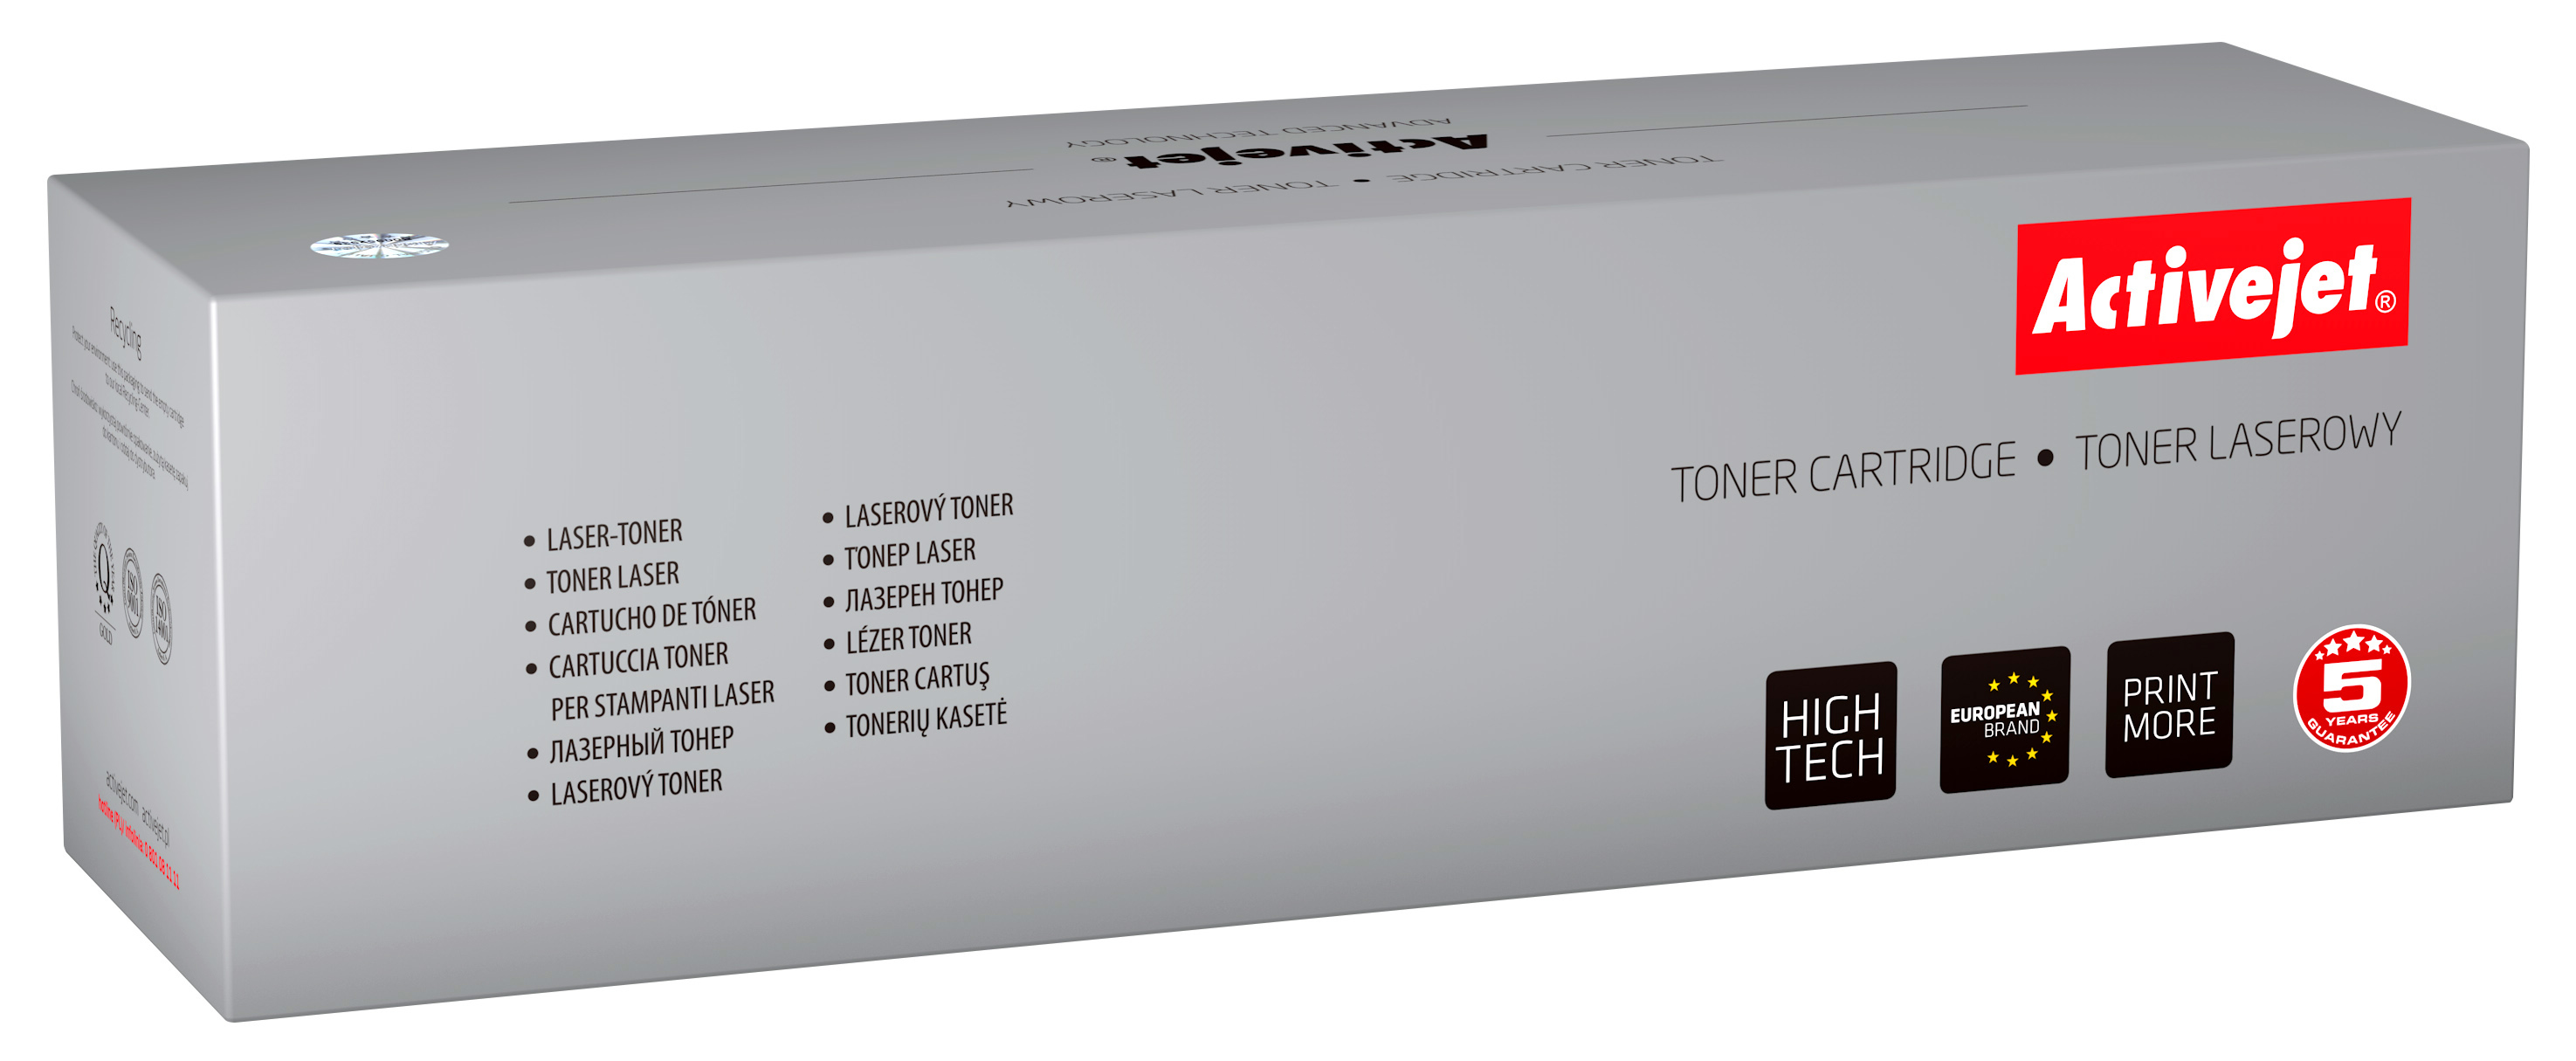 Toner Activejet ATS-M406AN do drukarki Samsung, Zamiennik Samsung CLT-M406S;  Premium;  1000 stron;  purpurowy.